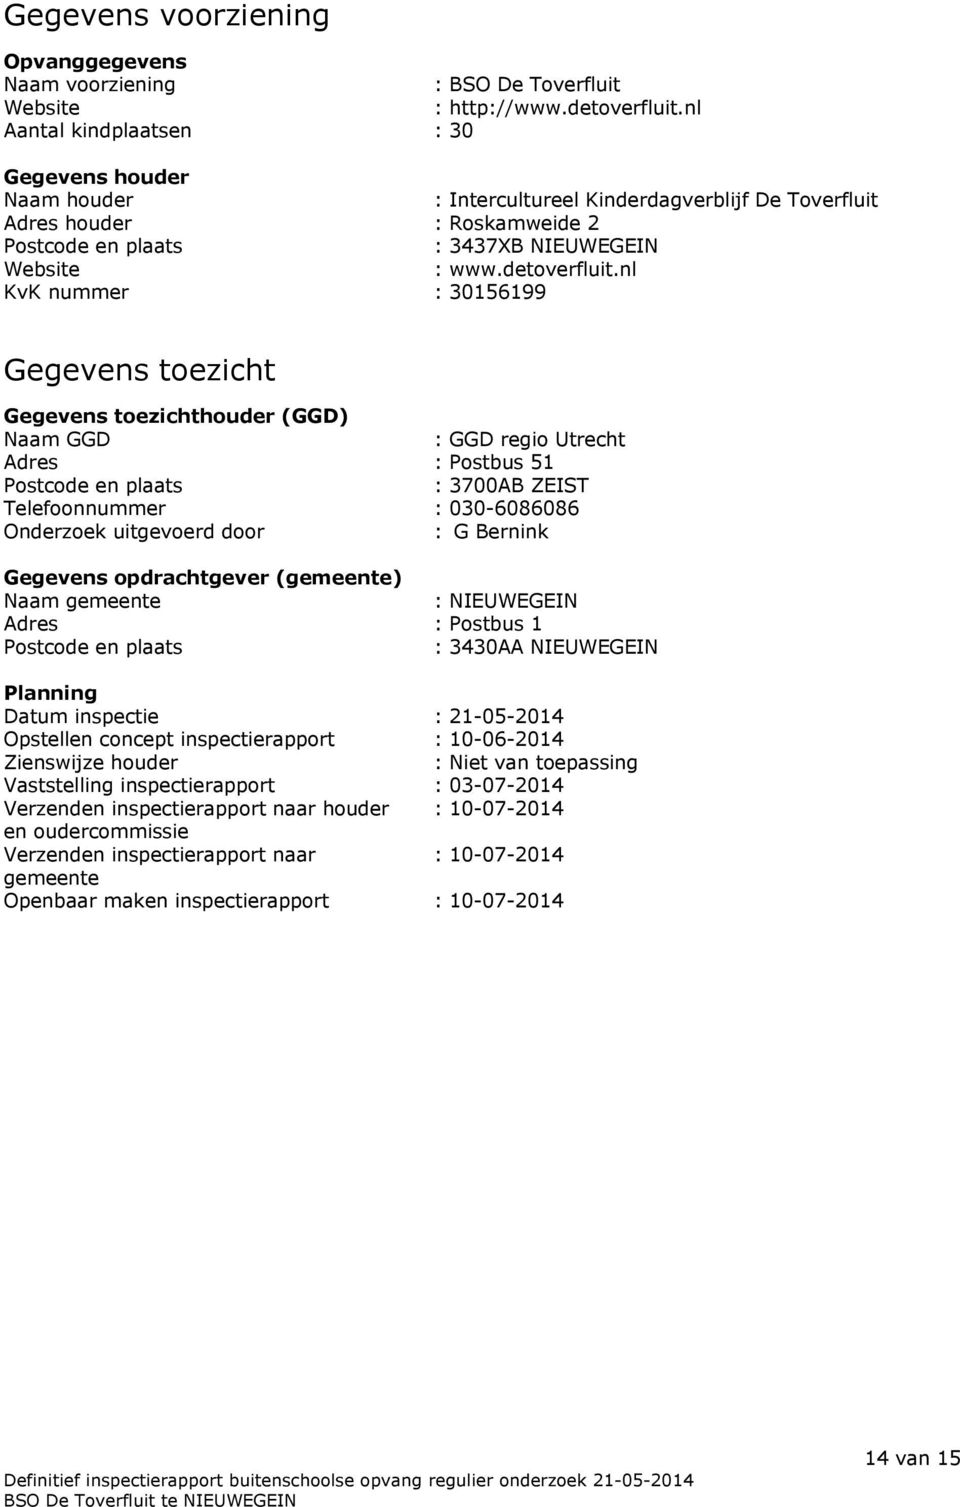 nl KvK nummer : 30156199 Gegevens toezicht Gegevens toezichthouder (GGD) Naam GGD : GGD regio Utrecht Adres : Postbus 51 Postcode en plaats : 3700AB ZEIST Telefoonnummer : 030-6086086 Onderzoek